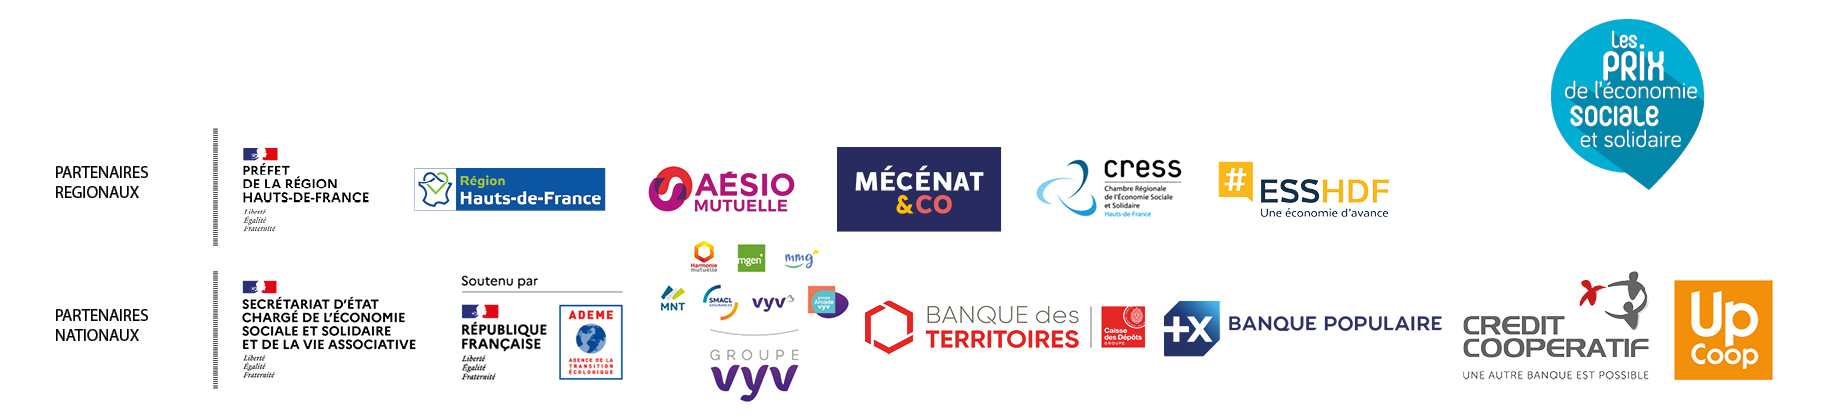 Les partenaires de la CRESS Hauts-de-France